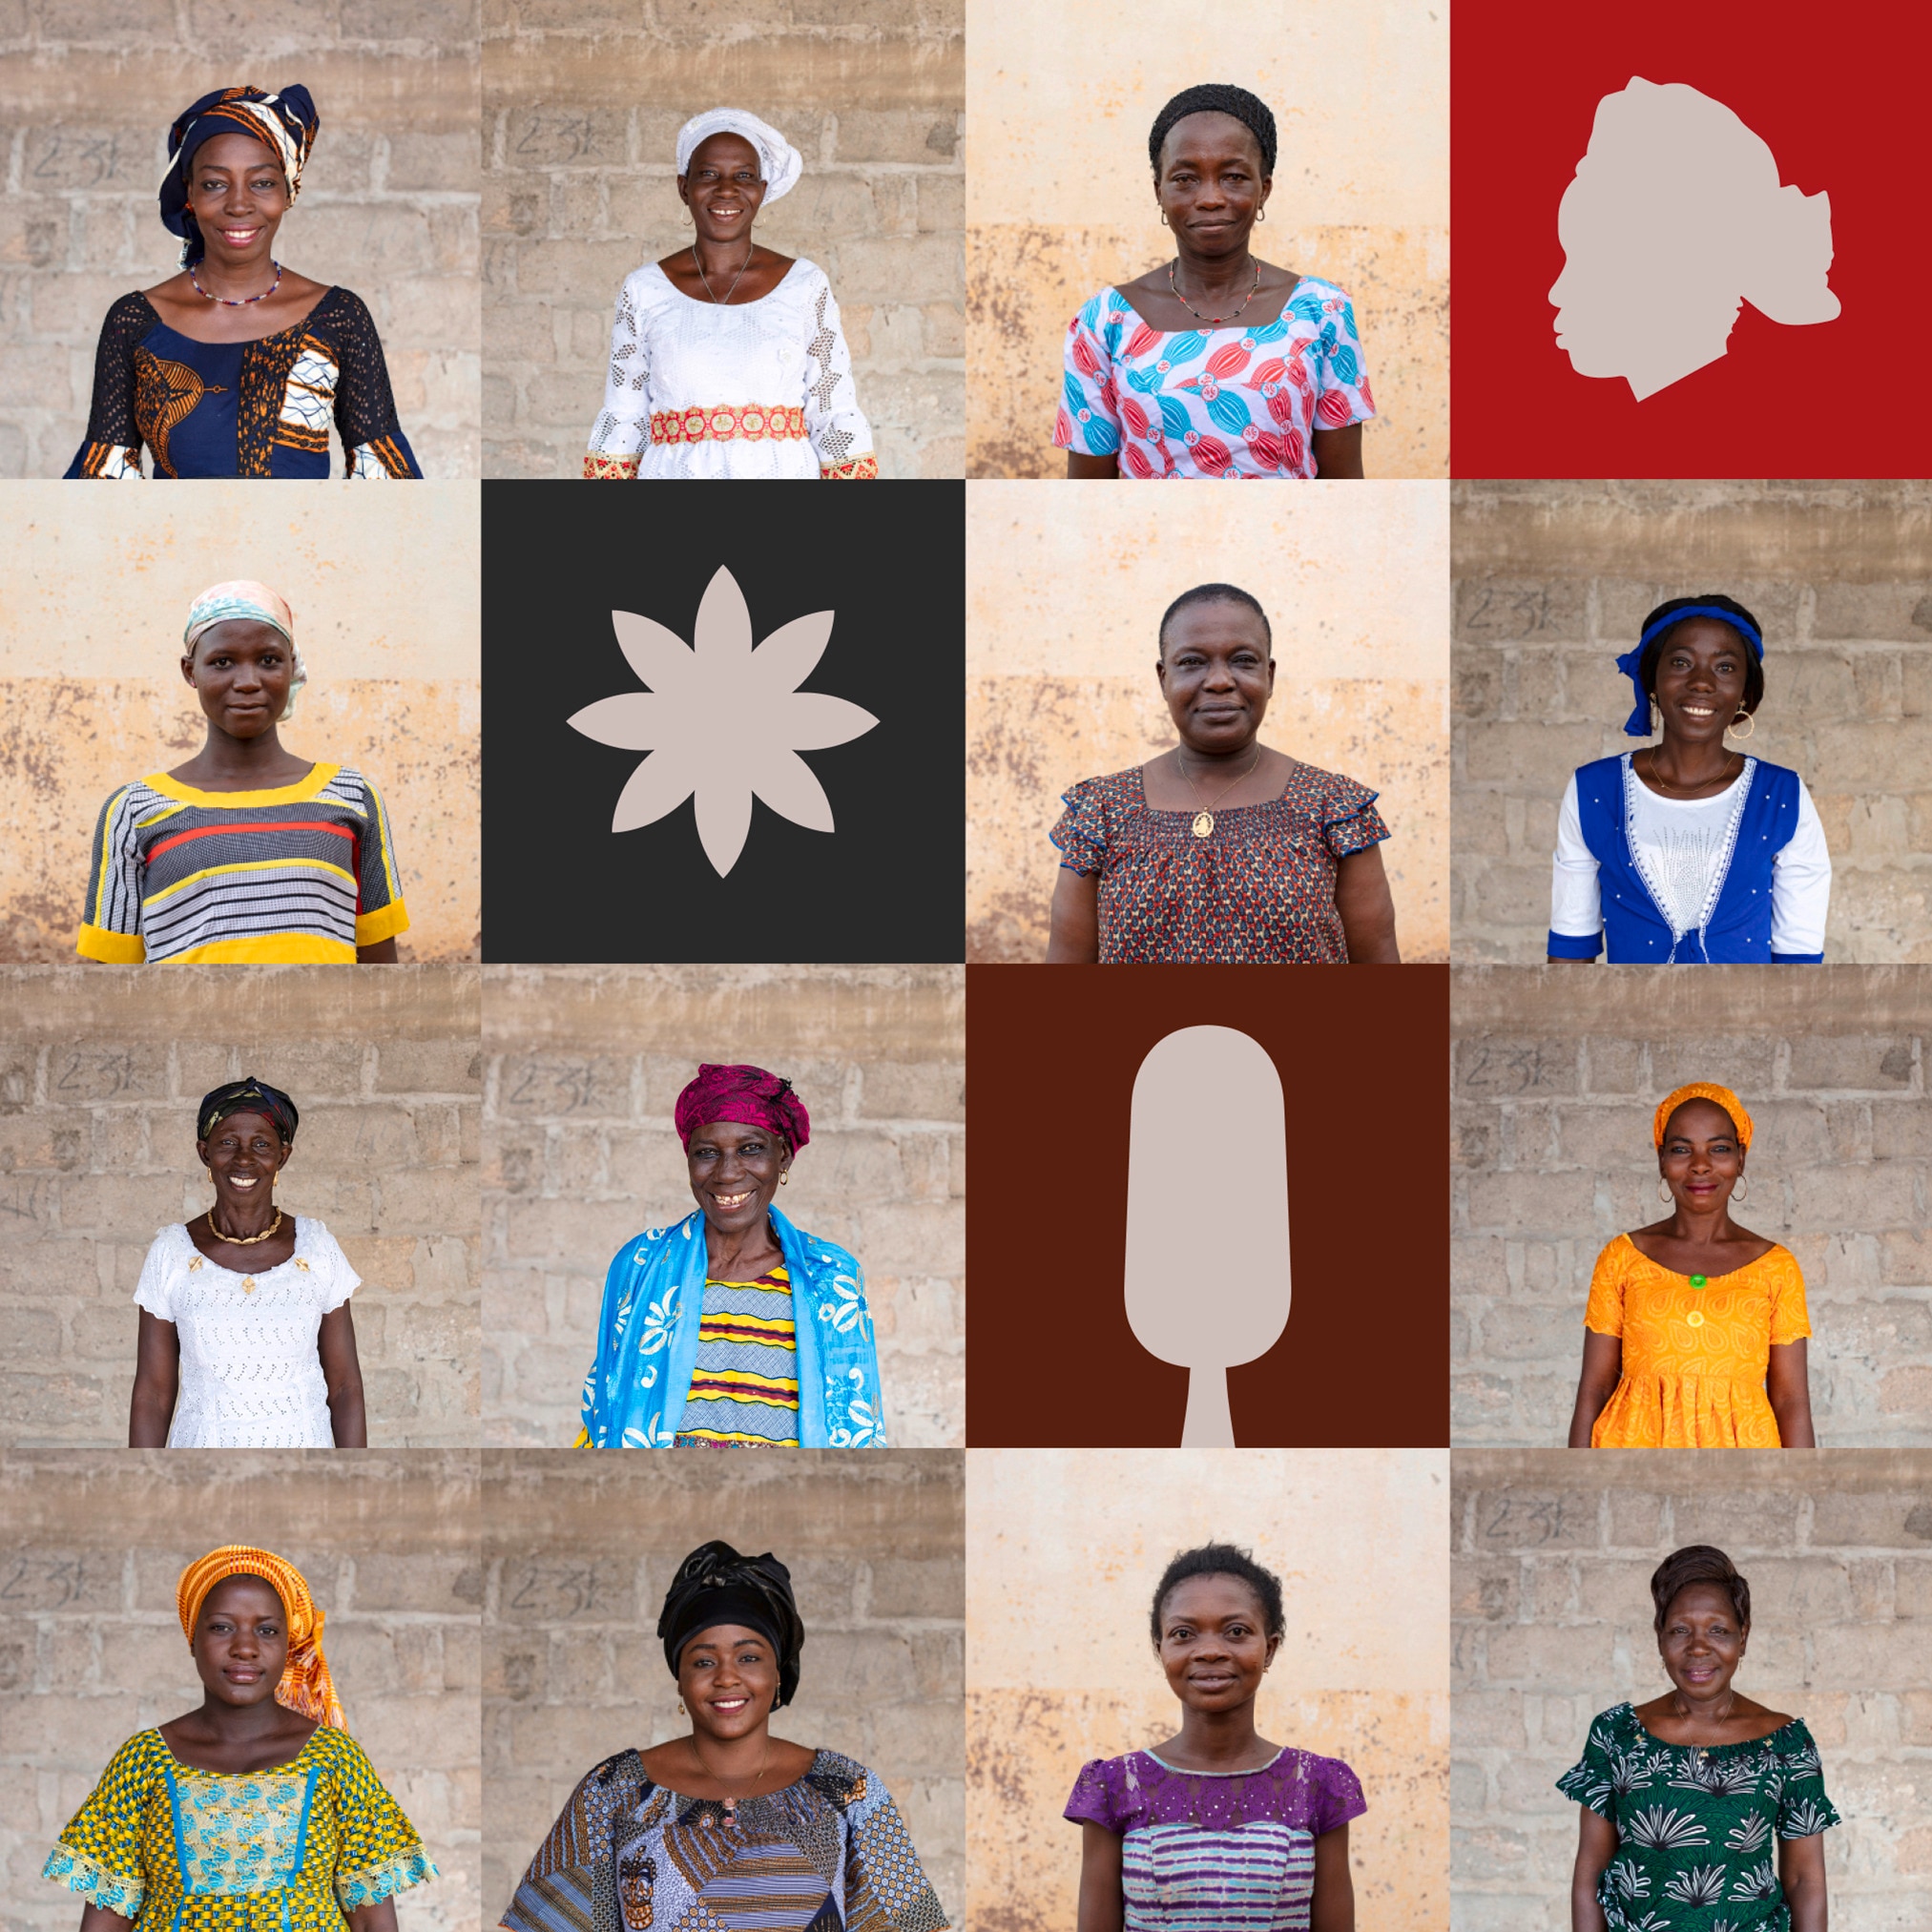 cuadro de 13 retratos de mujeres africanas sonrientes #3 - intercalado con algunas ilustraciones coloridas de corte cuadrado